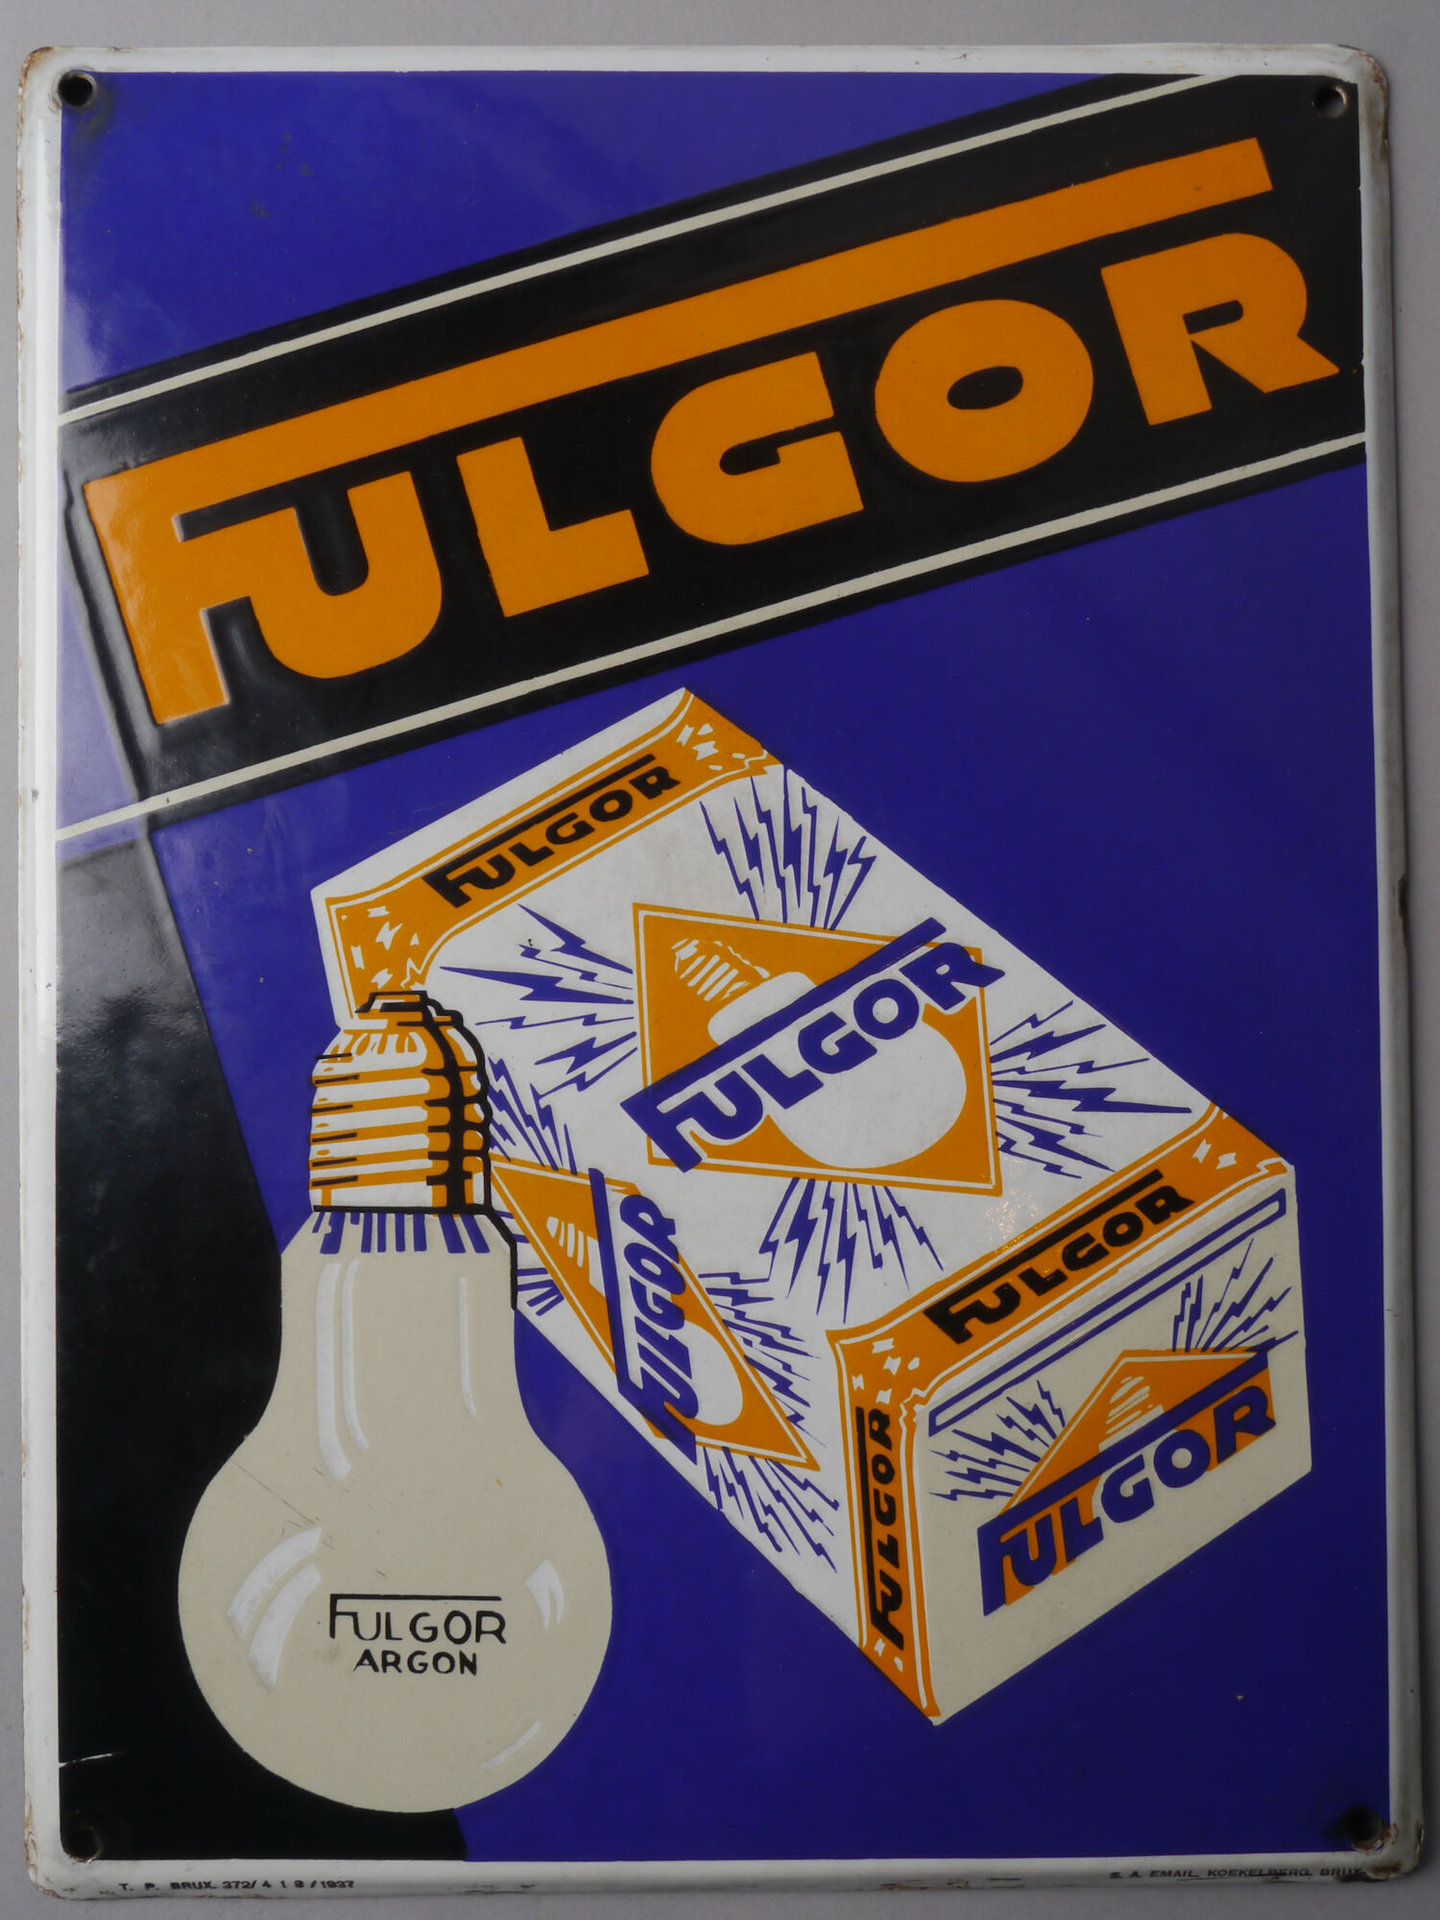 Geëmailleerd reclamebord voor lampen van het merk Fulgor